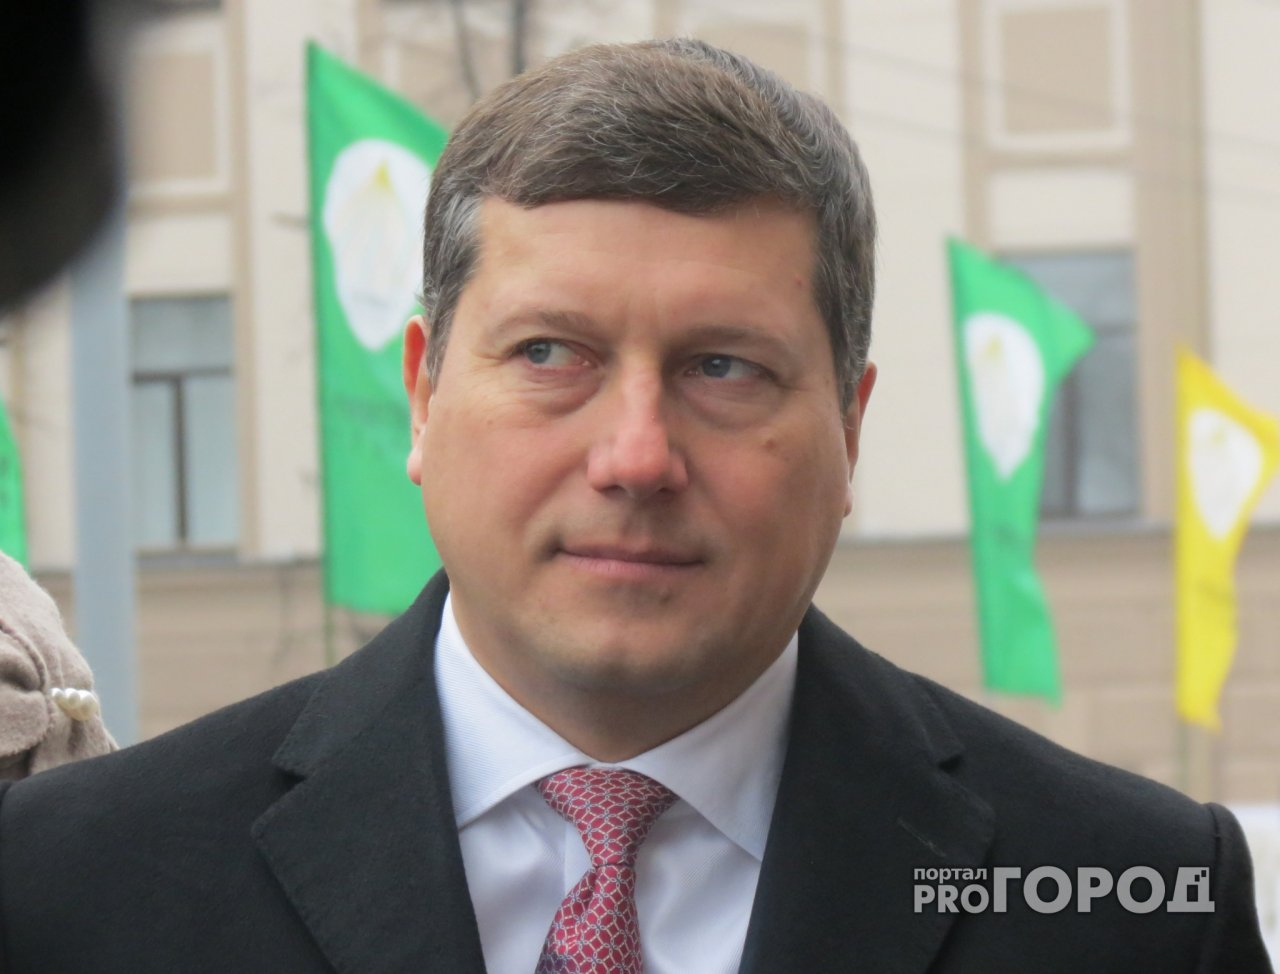 Бывшего мэра Нижнего Новгорода Олега Сорокина обвинили в похищении человека